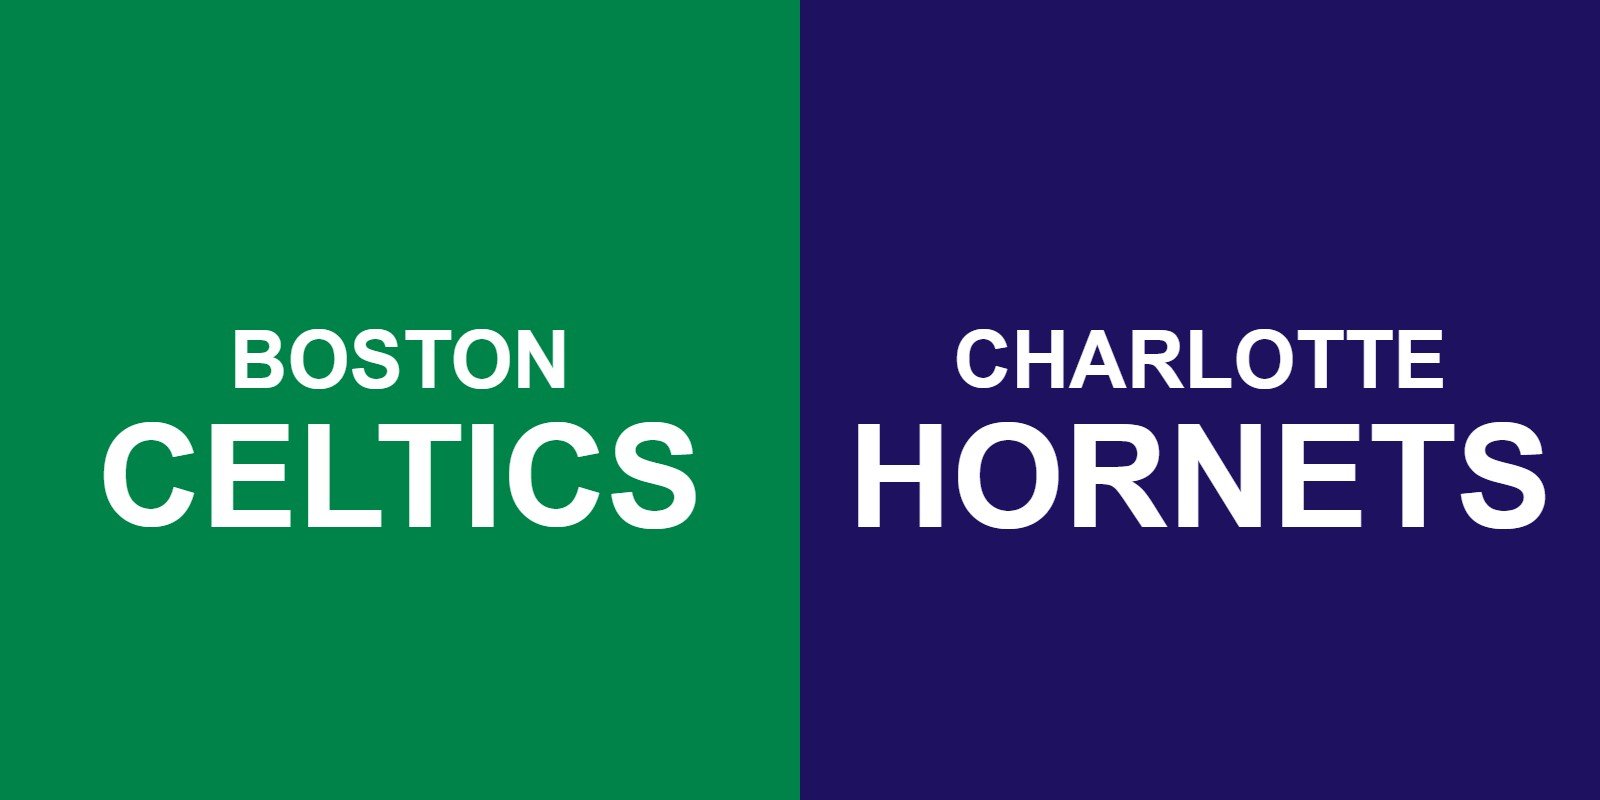 Celtics vs Hornets